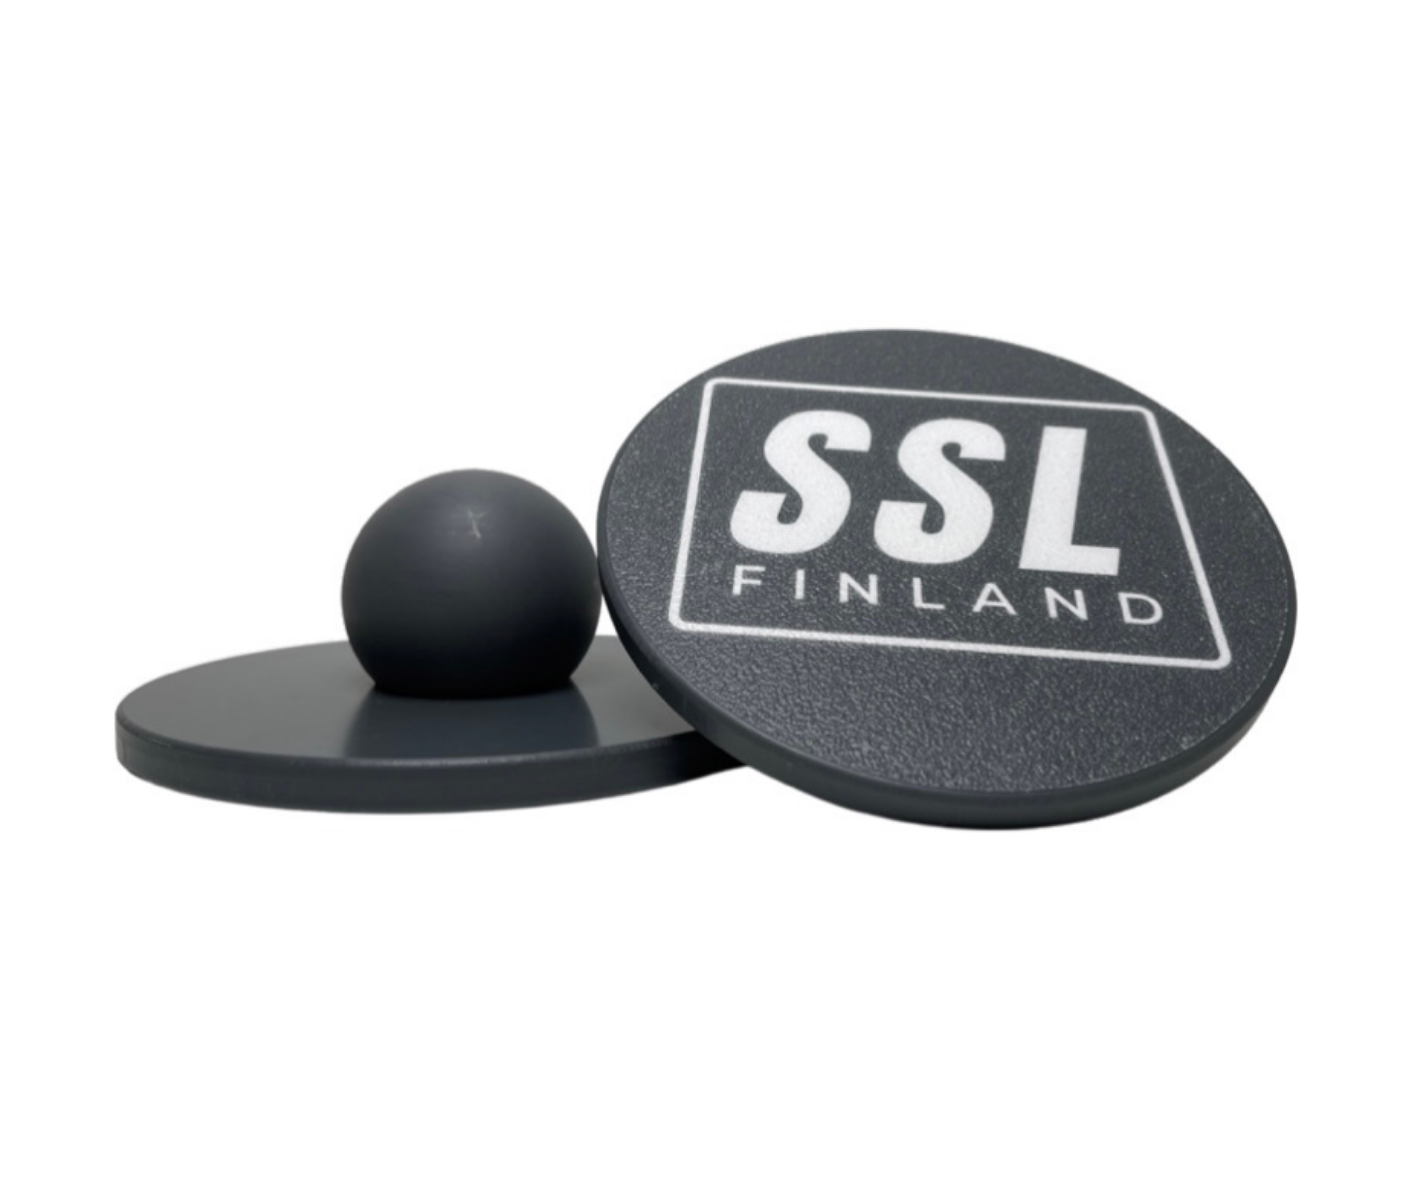 SSL FINLAND TASAPAINOLAUDAT & LEVEL 1 HARJOITUSVIDEOT